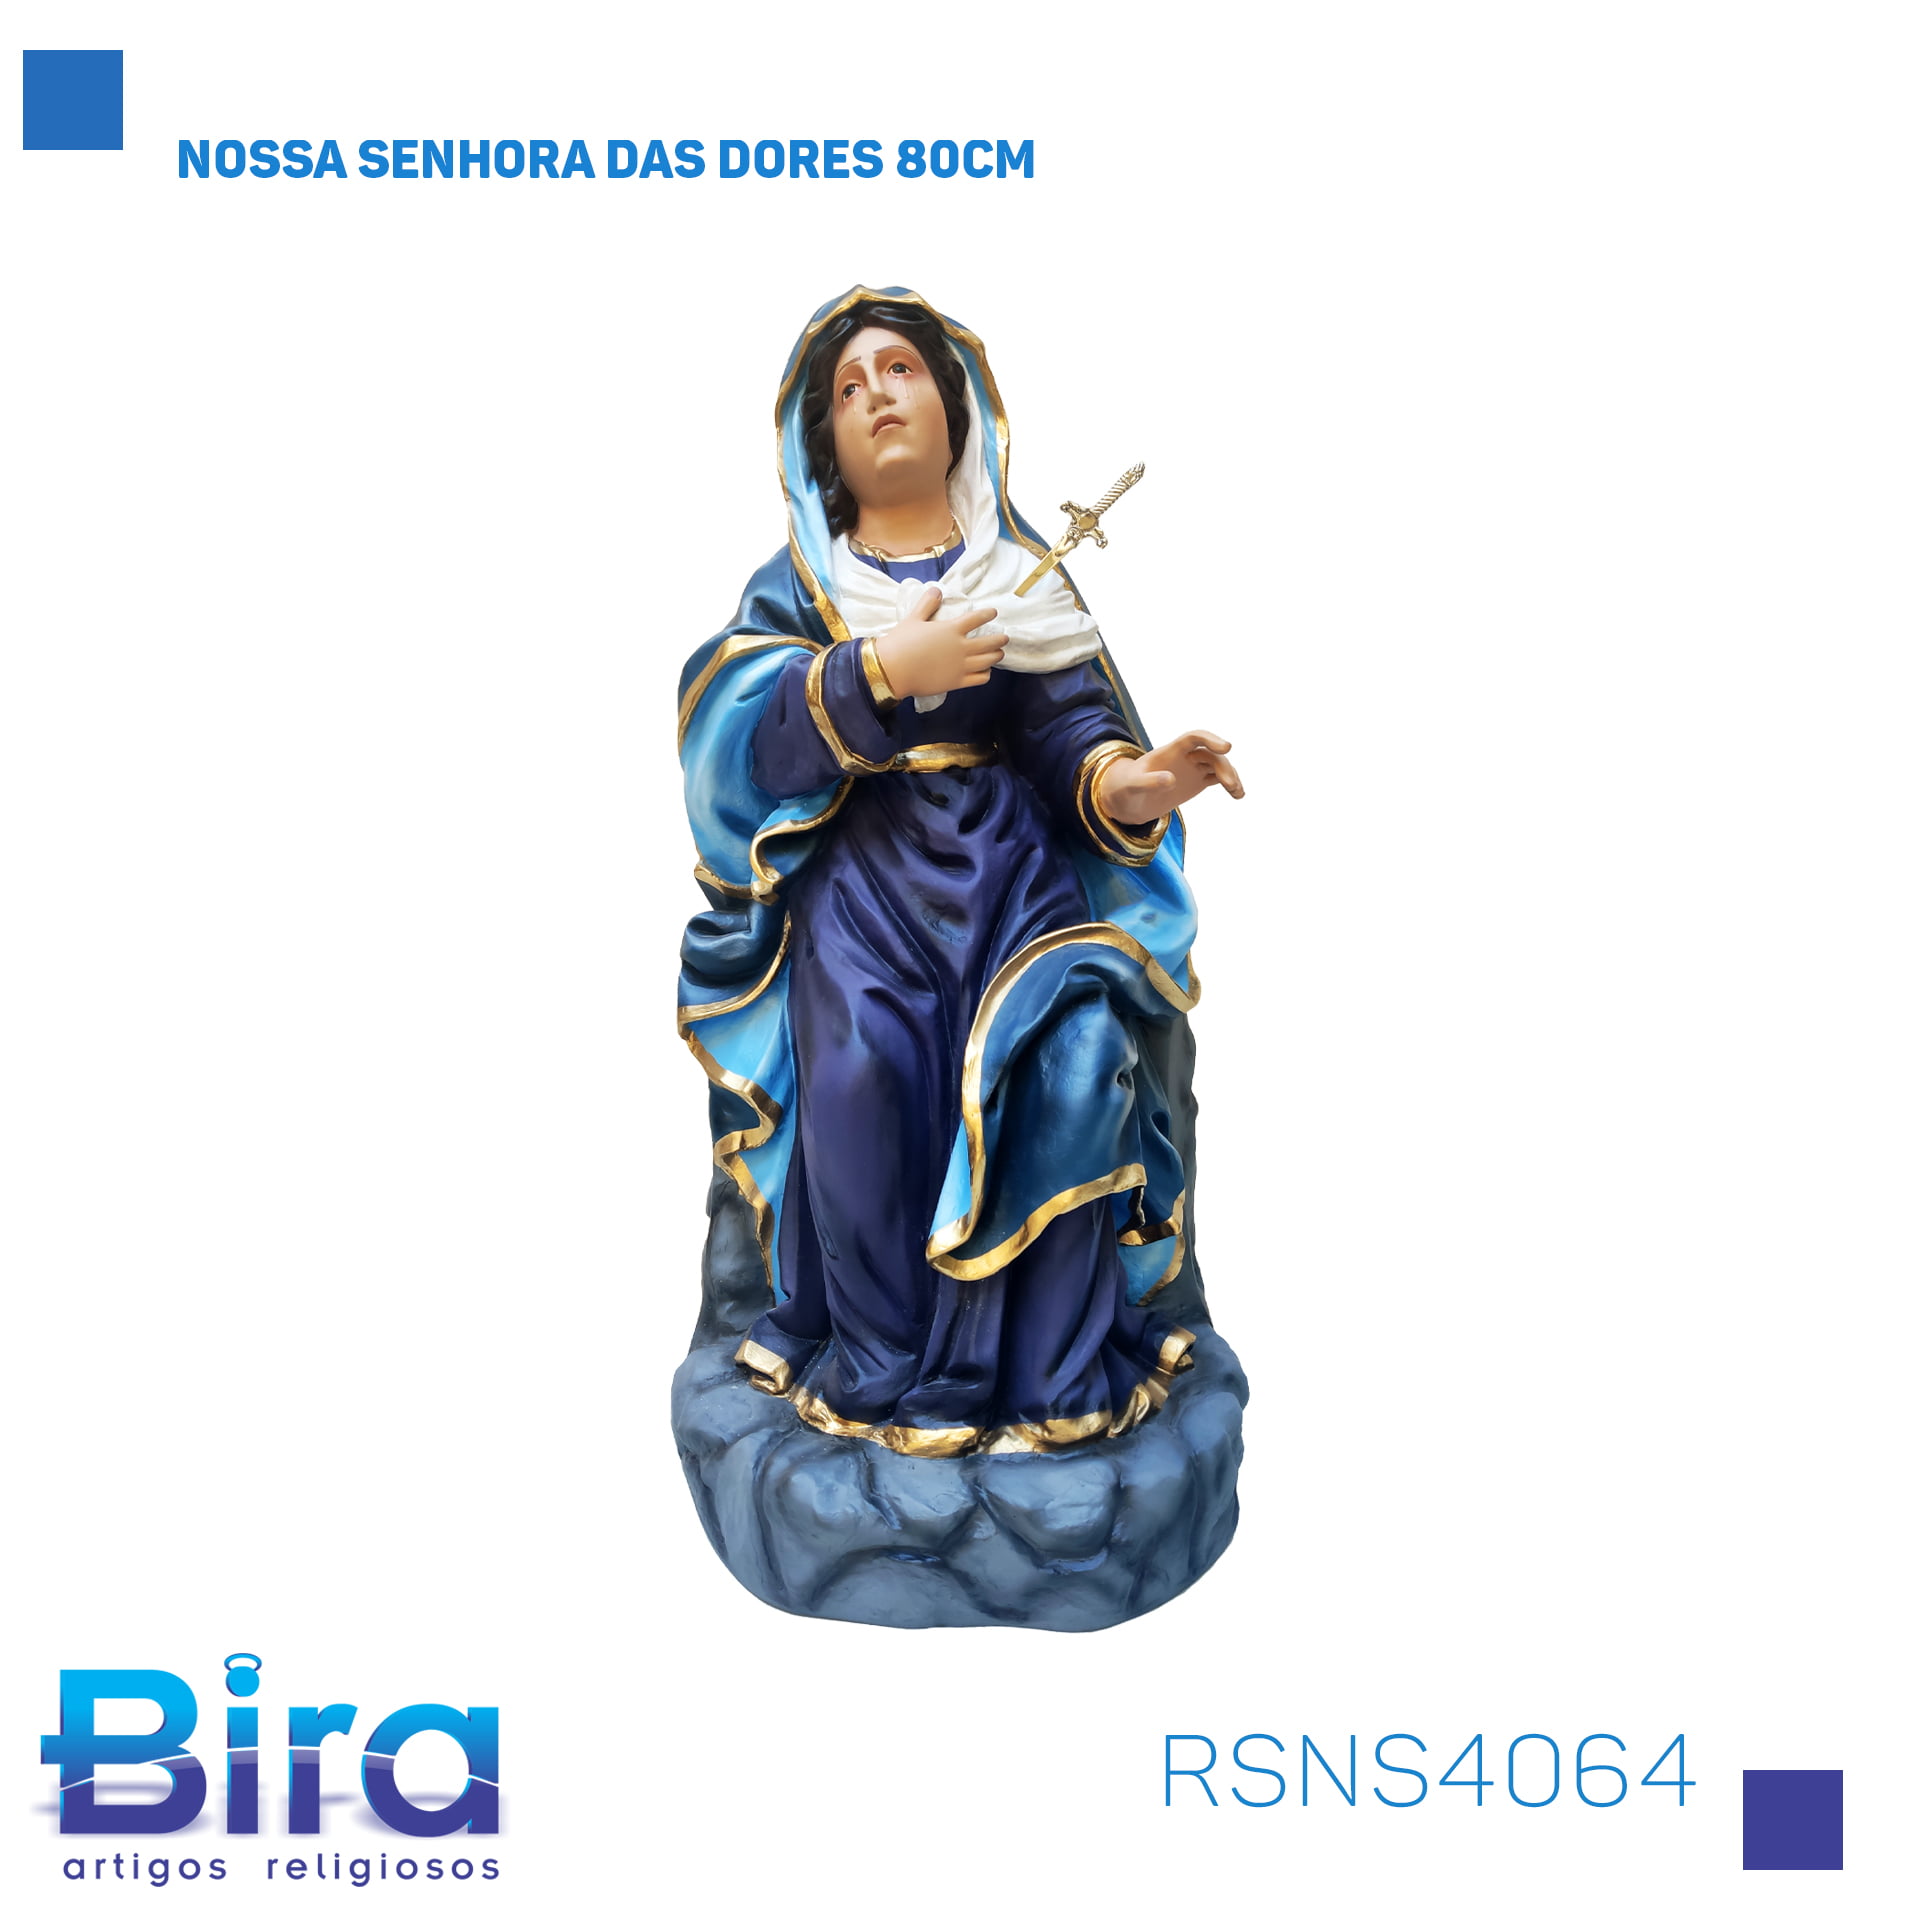 Bira Artigos Religiosos - NOSSA SENHORA DAS DORES 80CM CÓD.: RSNS4064